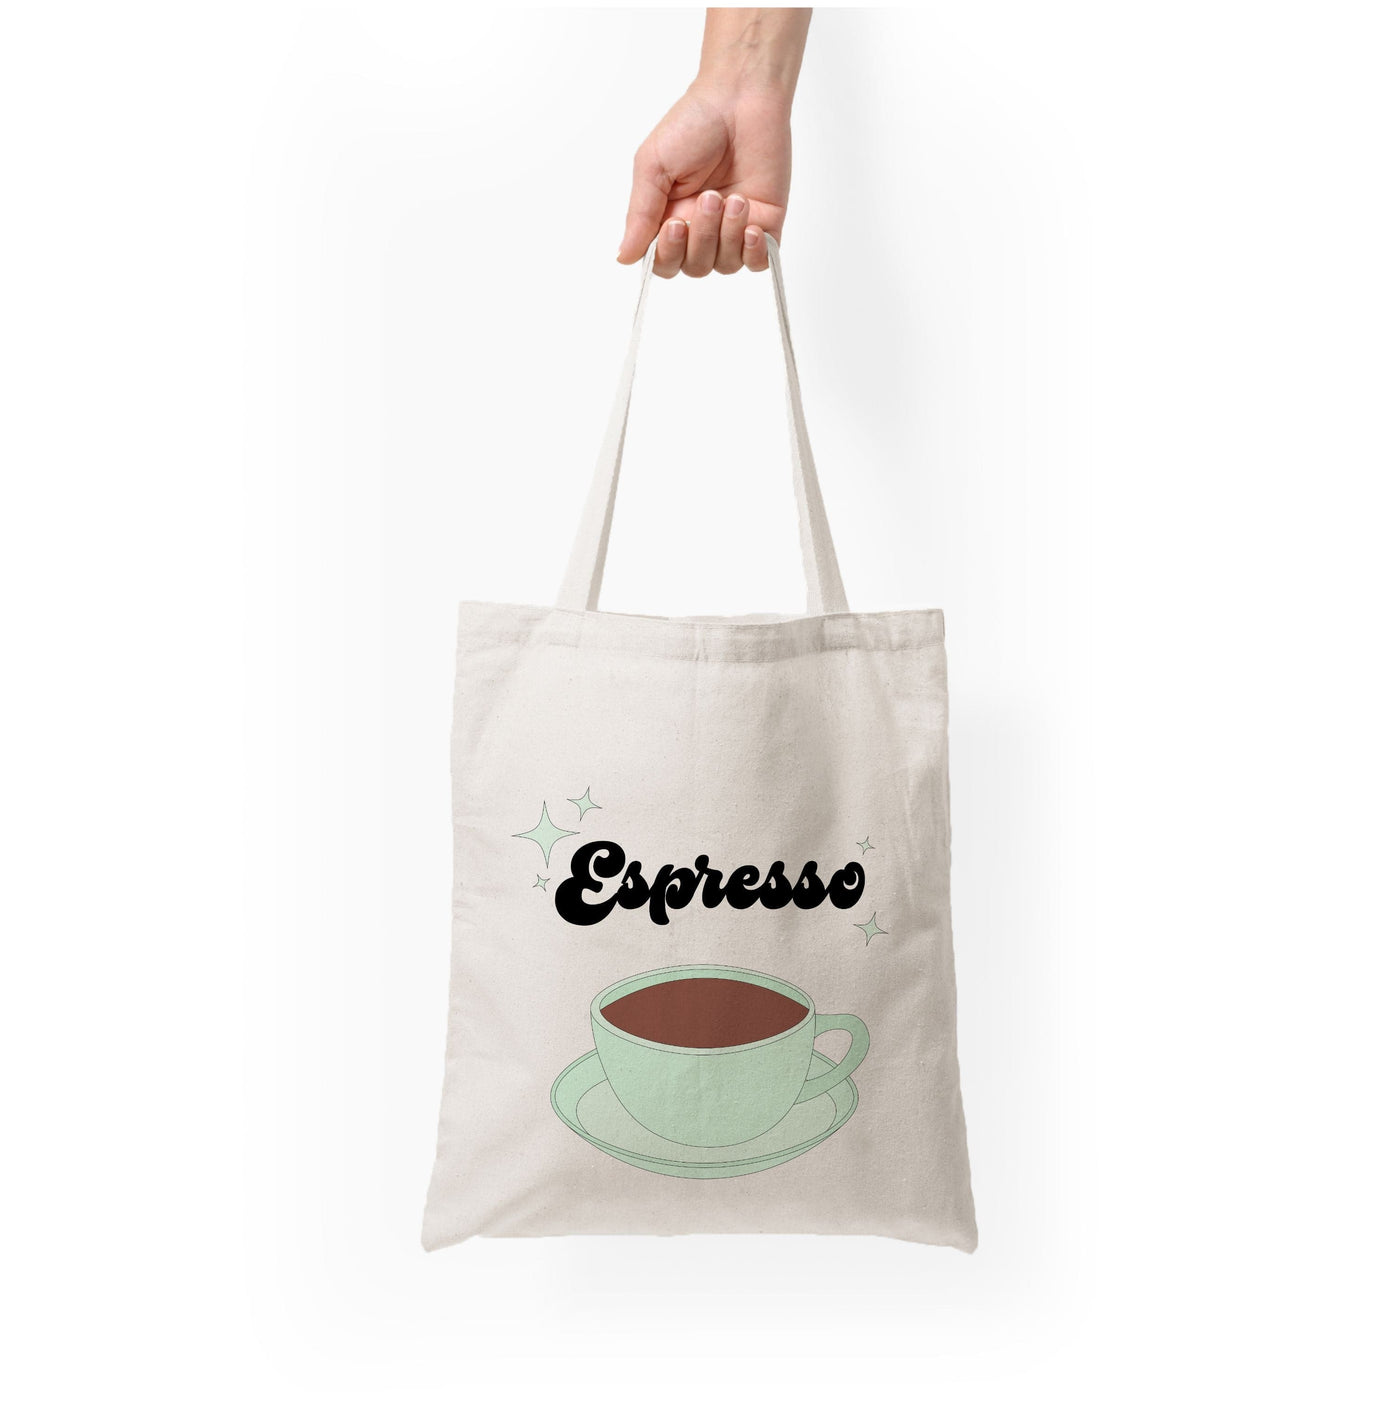 Espresso - Sabrina Carpenter Tote Bag